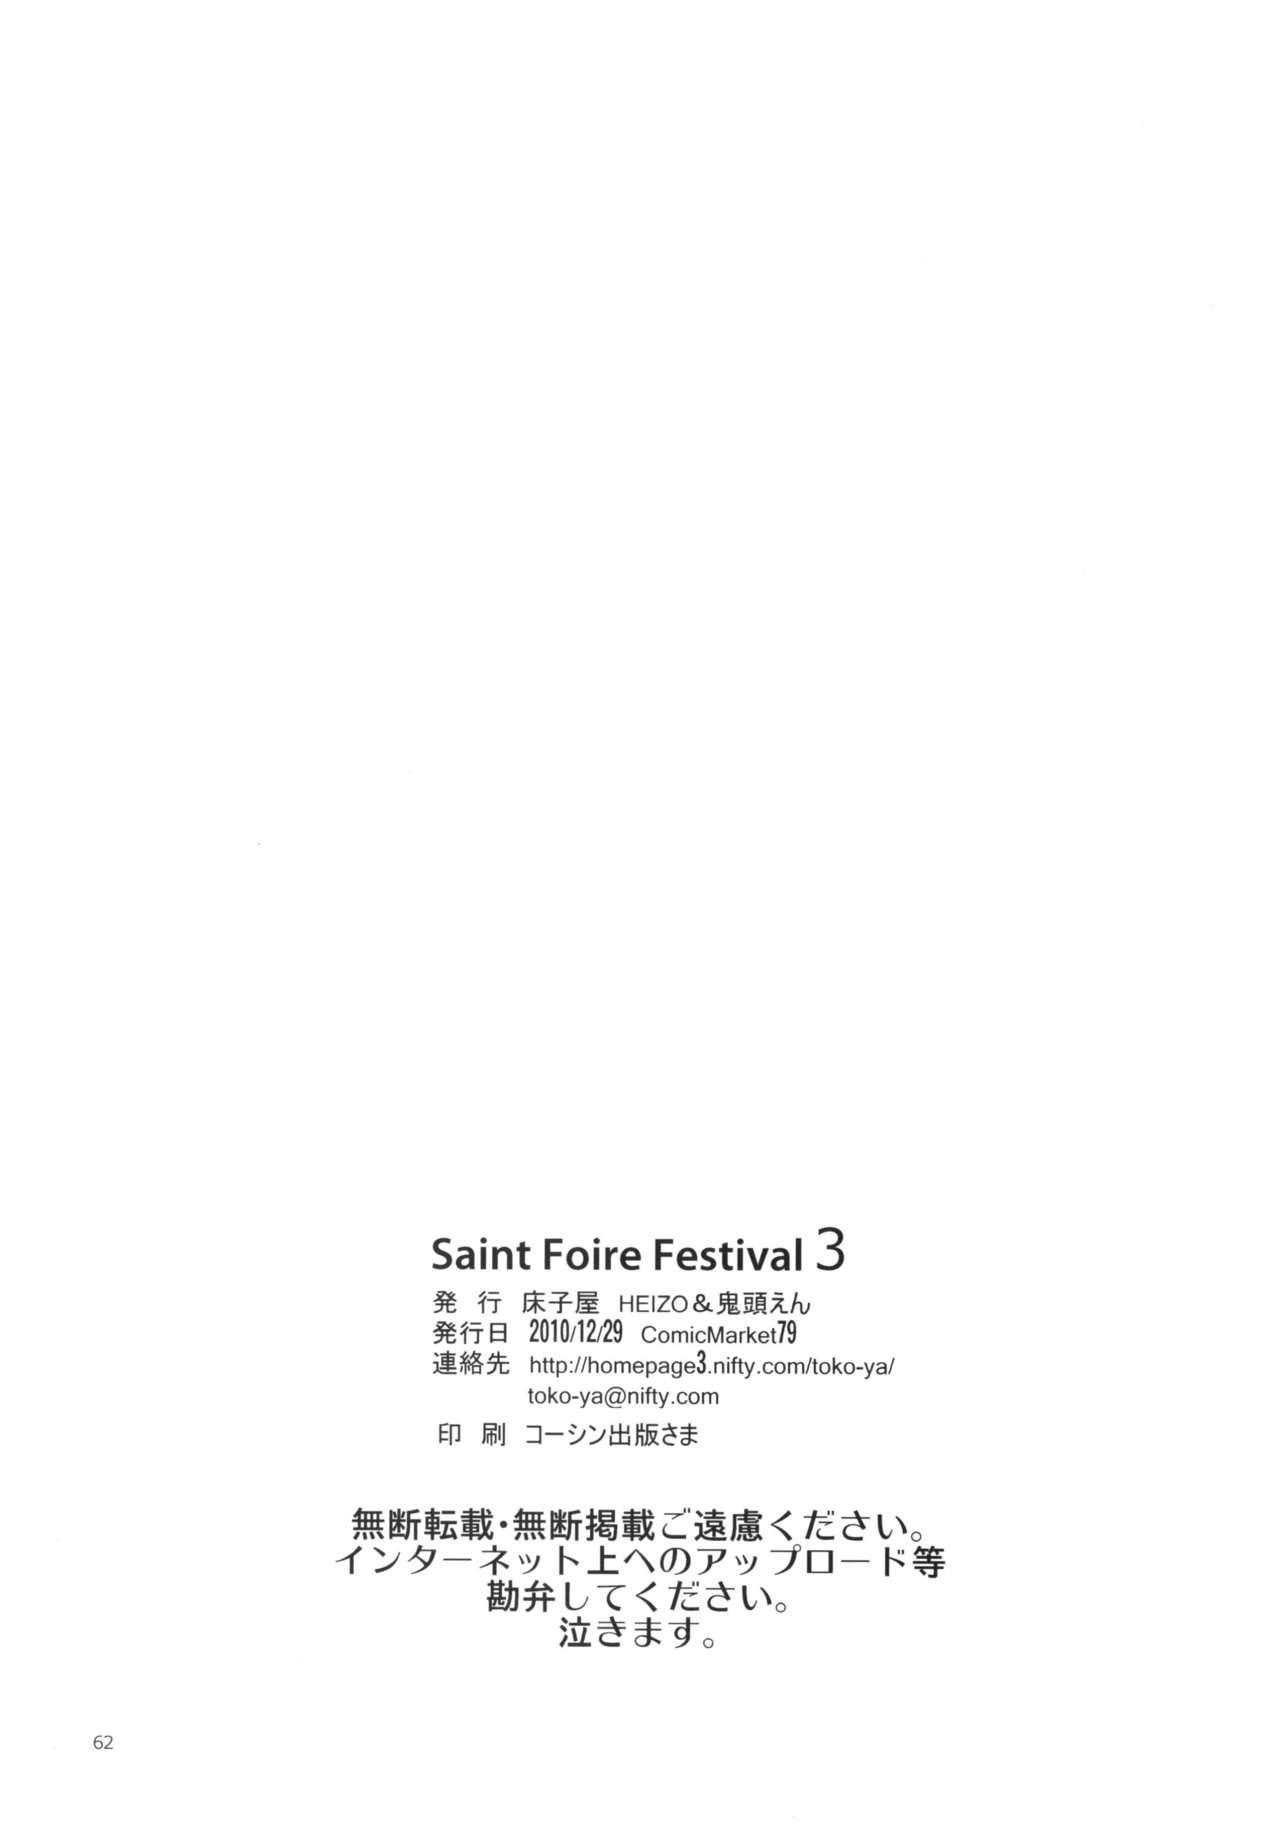 Saint Foire Festival 3 Richildis 61